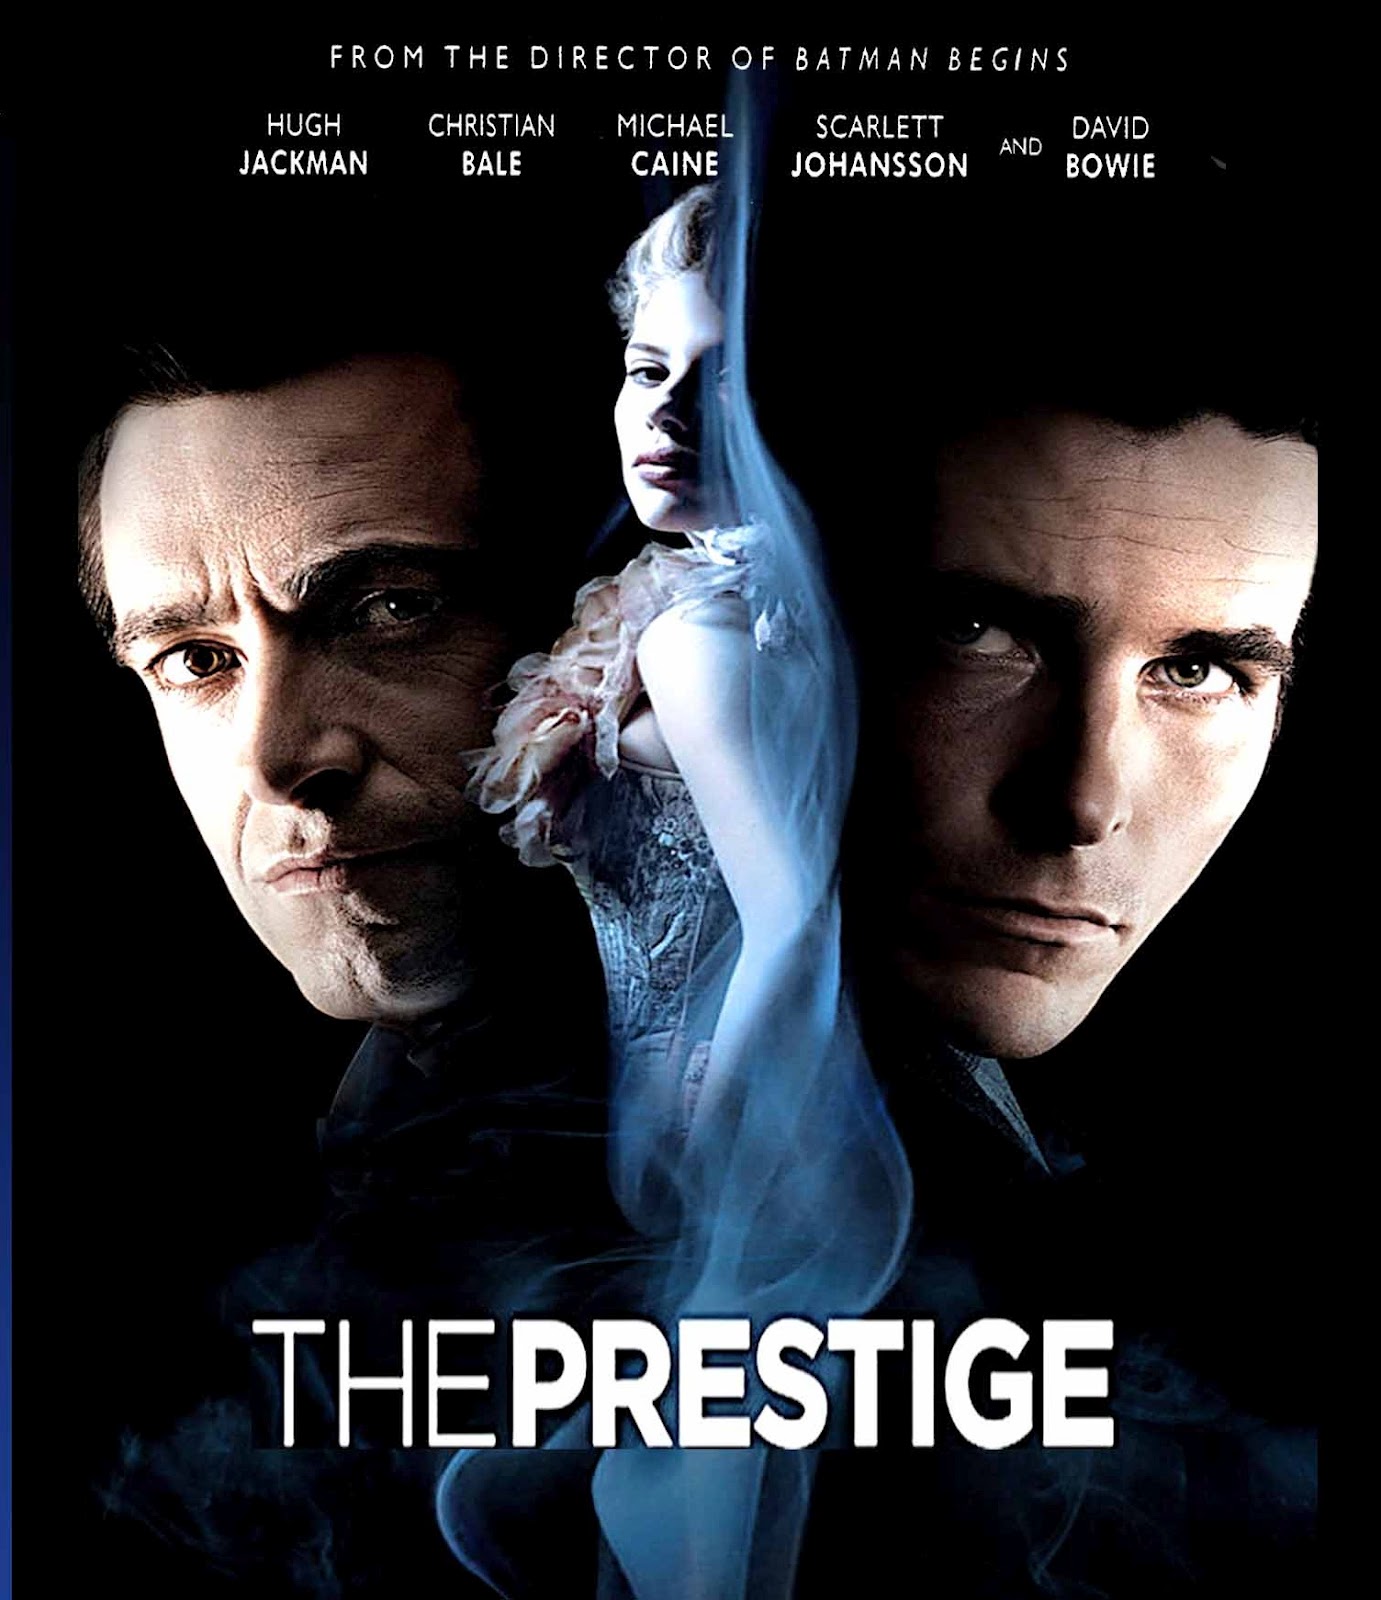 The Prestige whole-movie ESL lesson poster